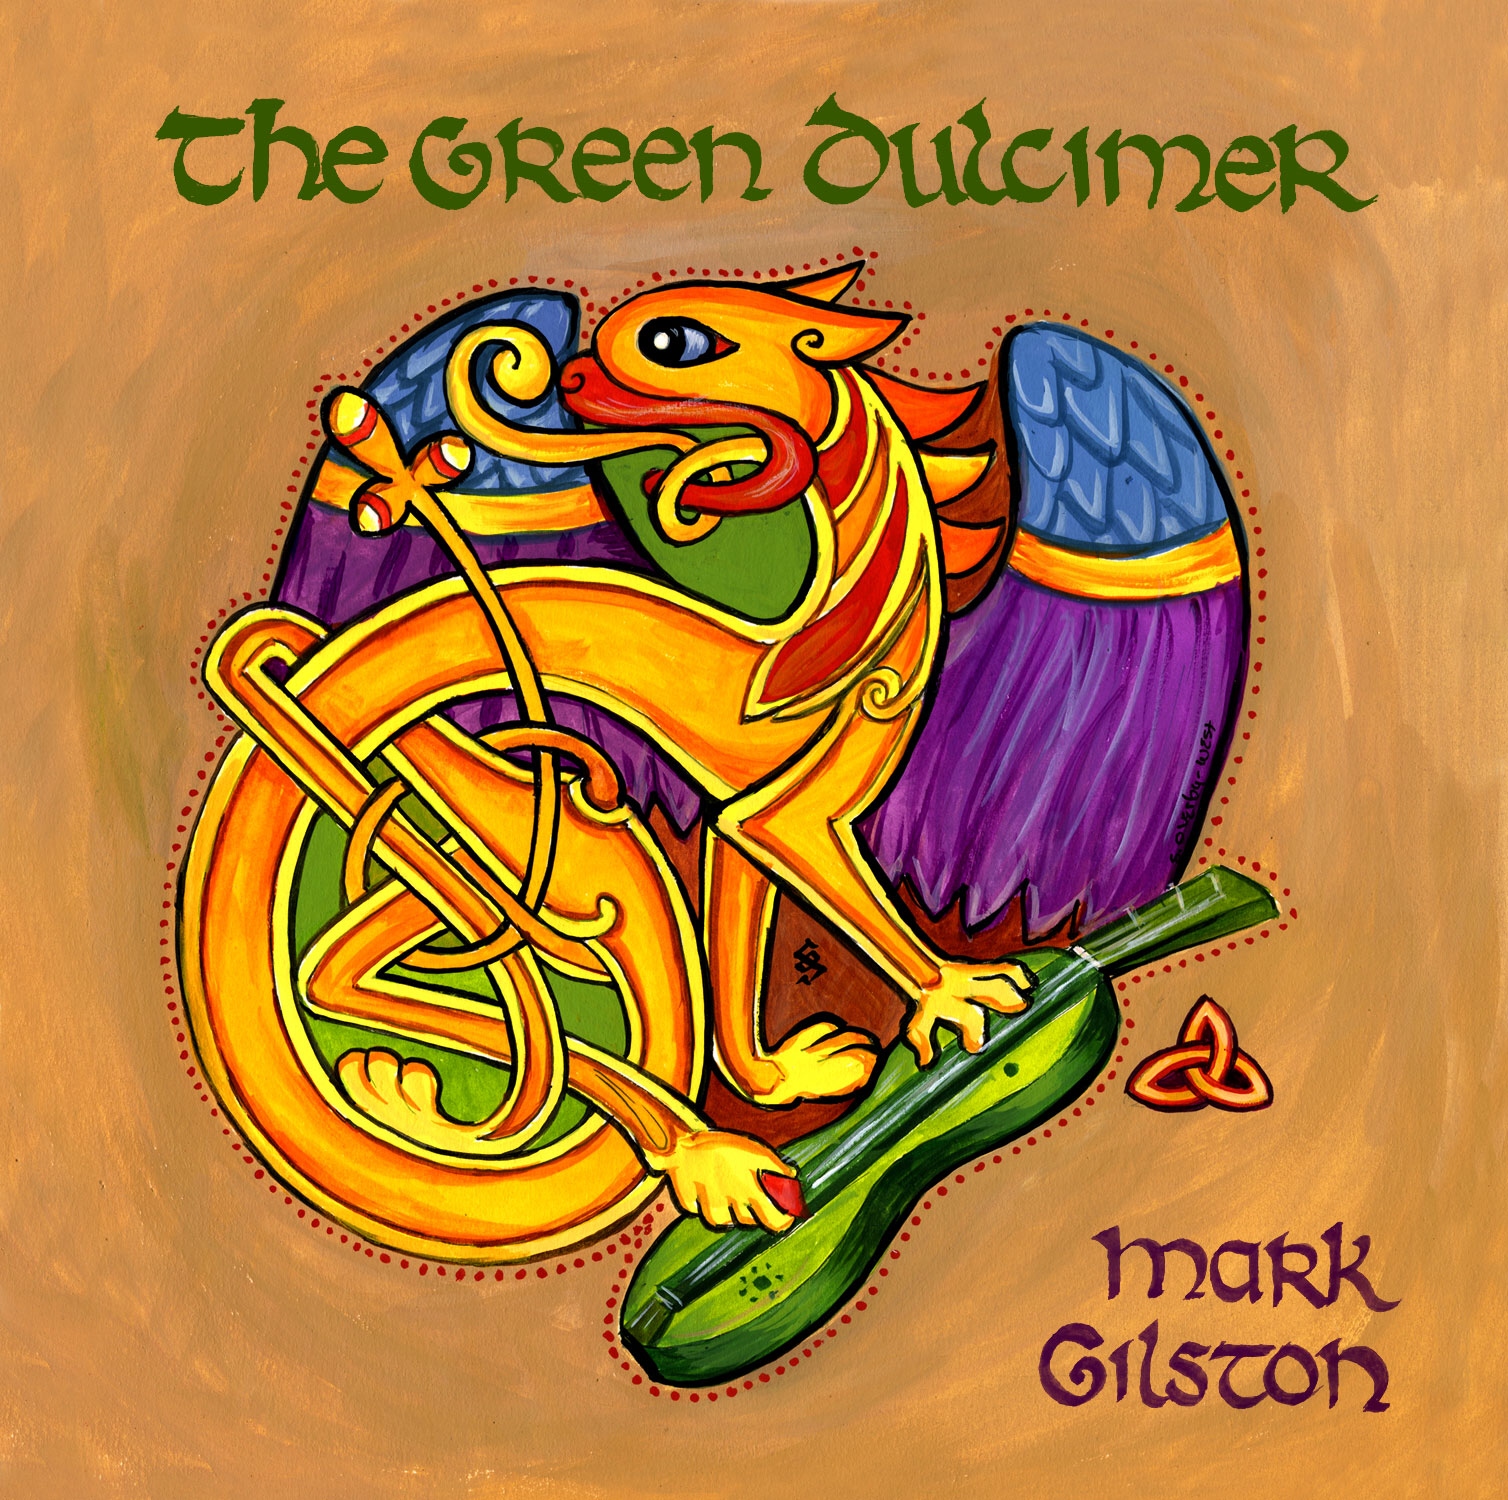 Mark Gilston's CD The Green Dulcimer